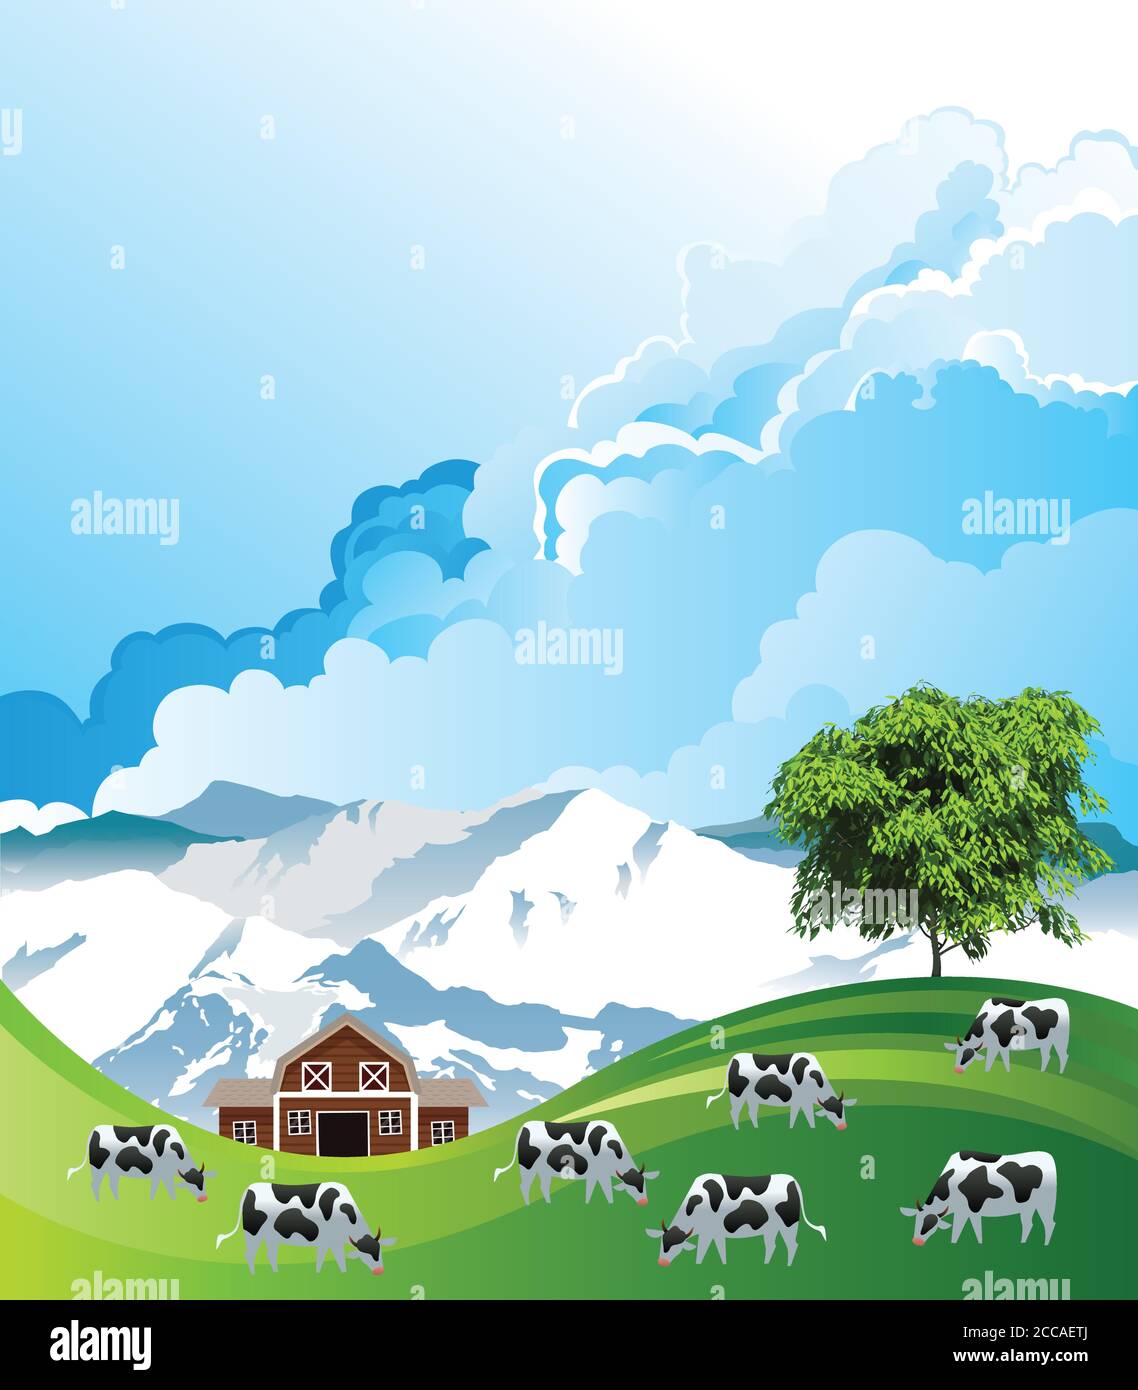 Pintoresca escena rural con una manada de vacas pastando verano pastos montañosos de tierras bajas contra un cielo azul nublado Ilustración del Vector